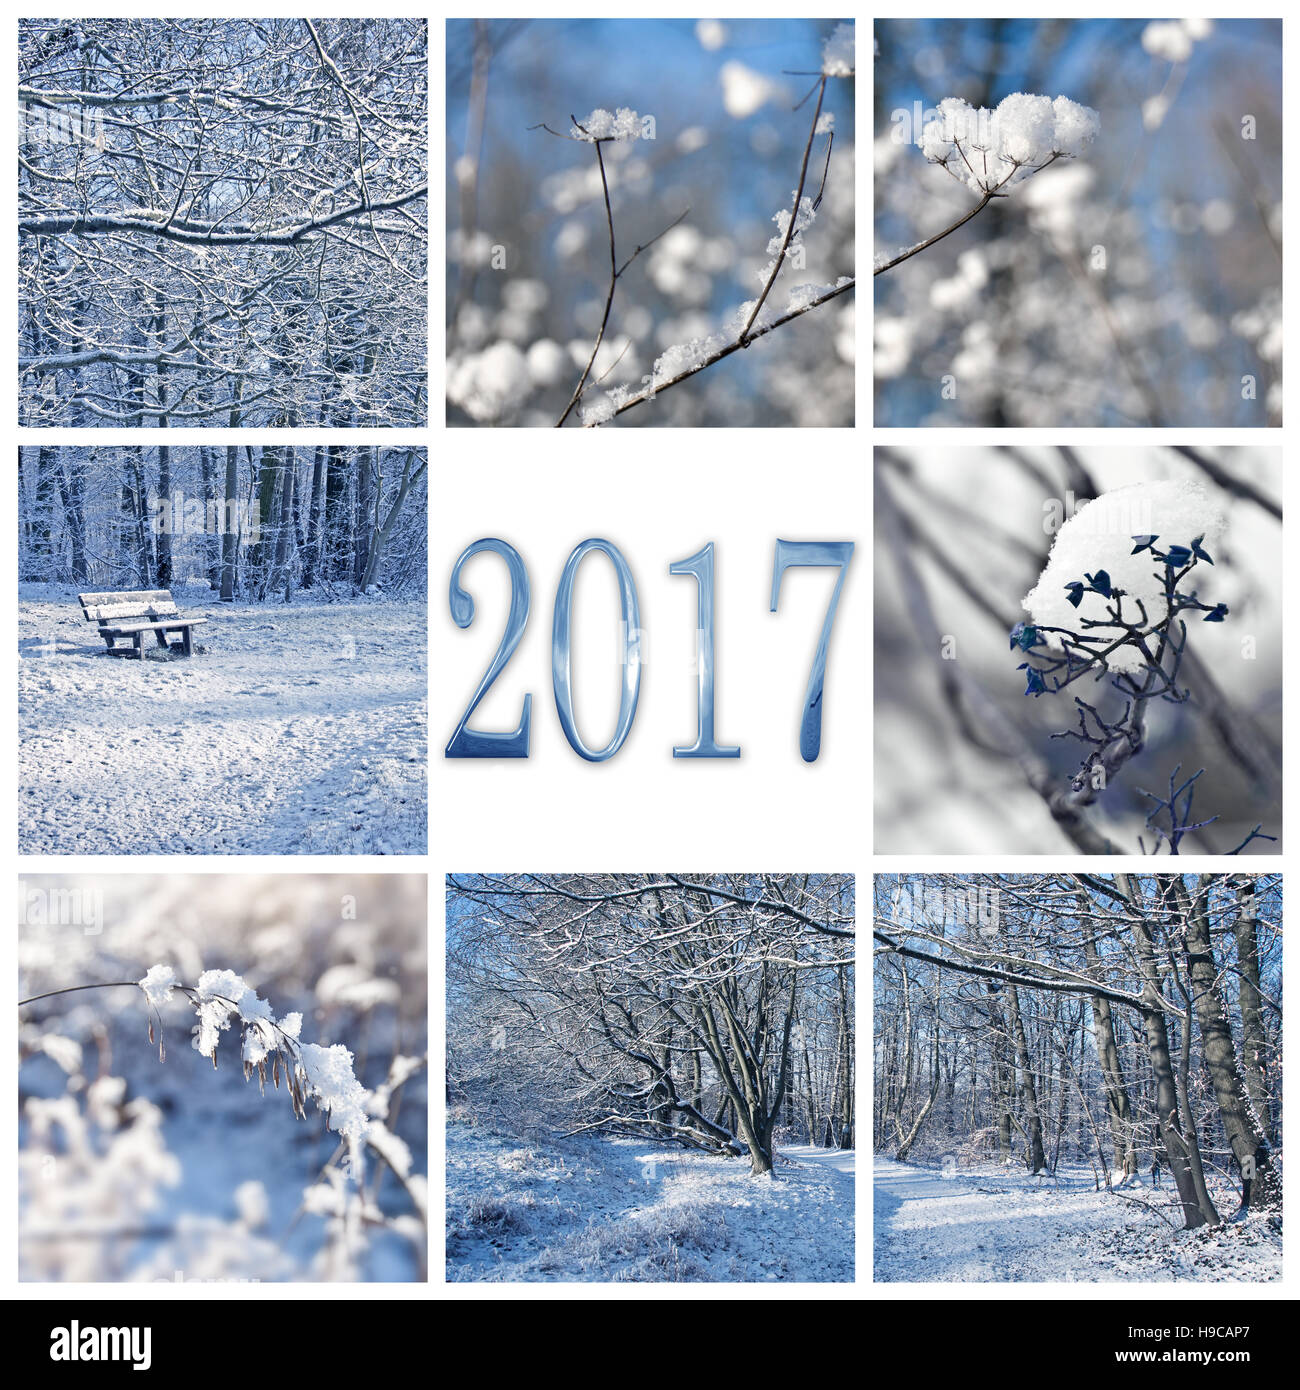 2017, la neve e il paesaggio invernale square biglietto di auguri Foto Stock